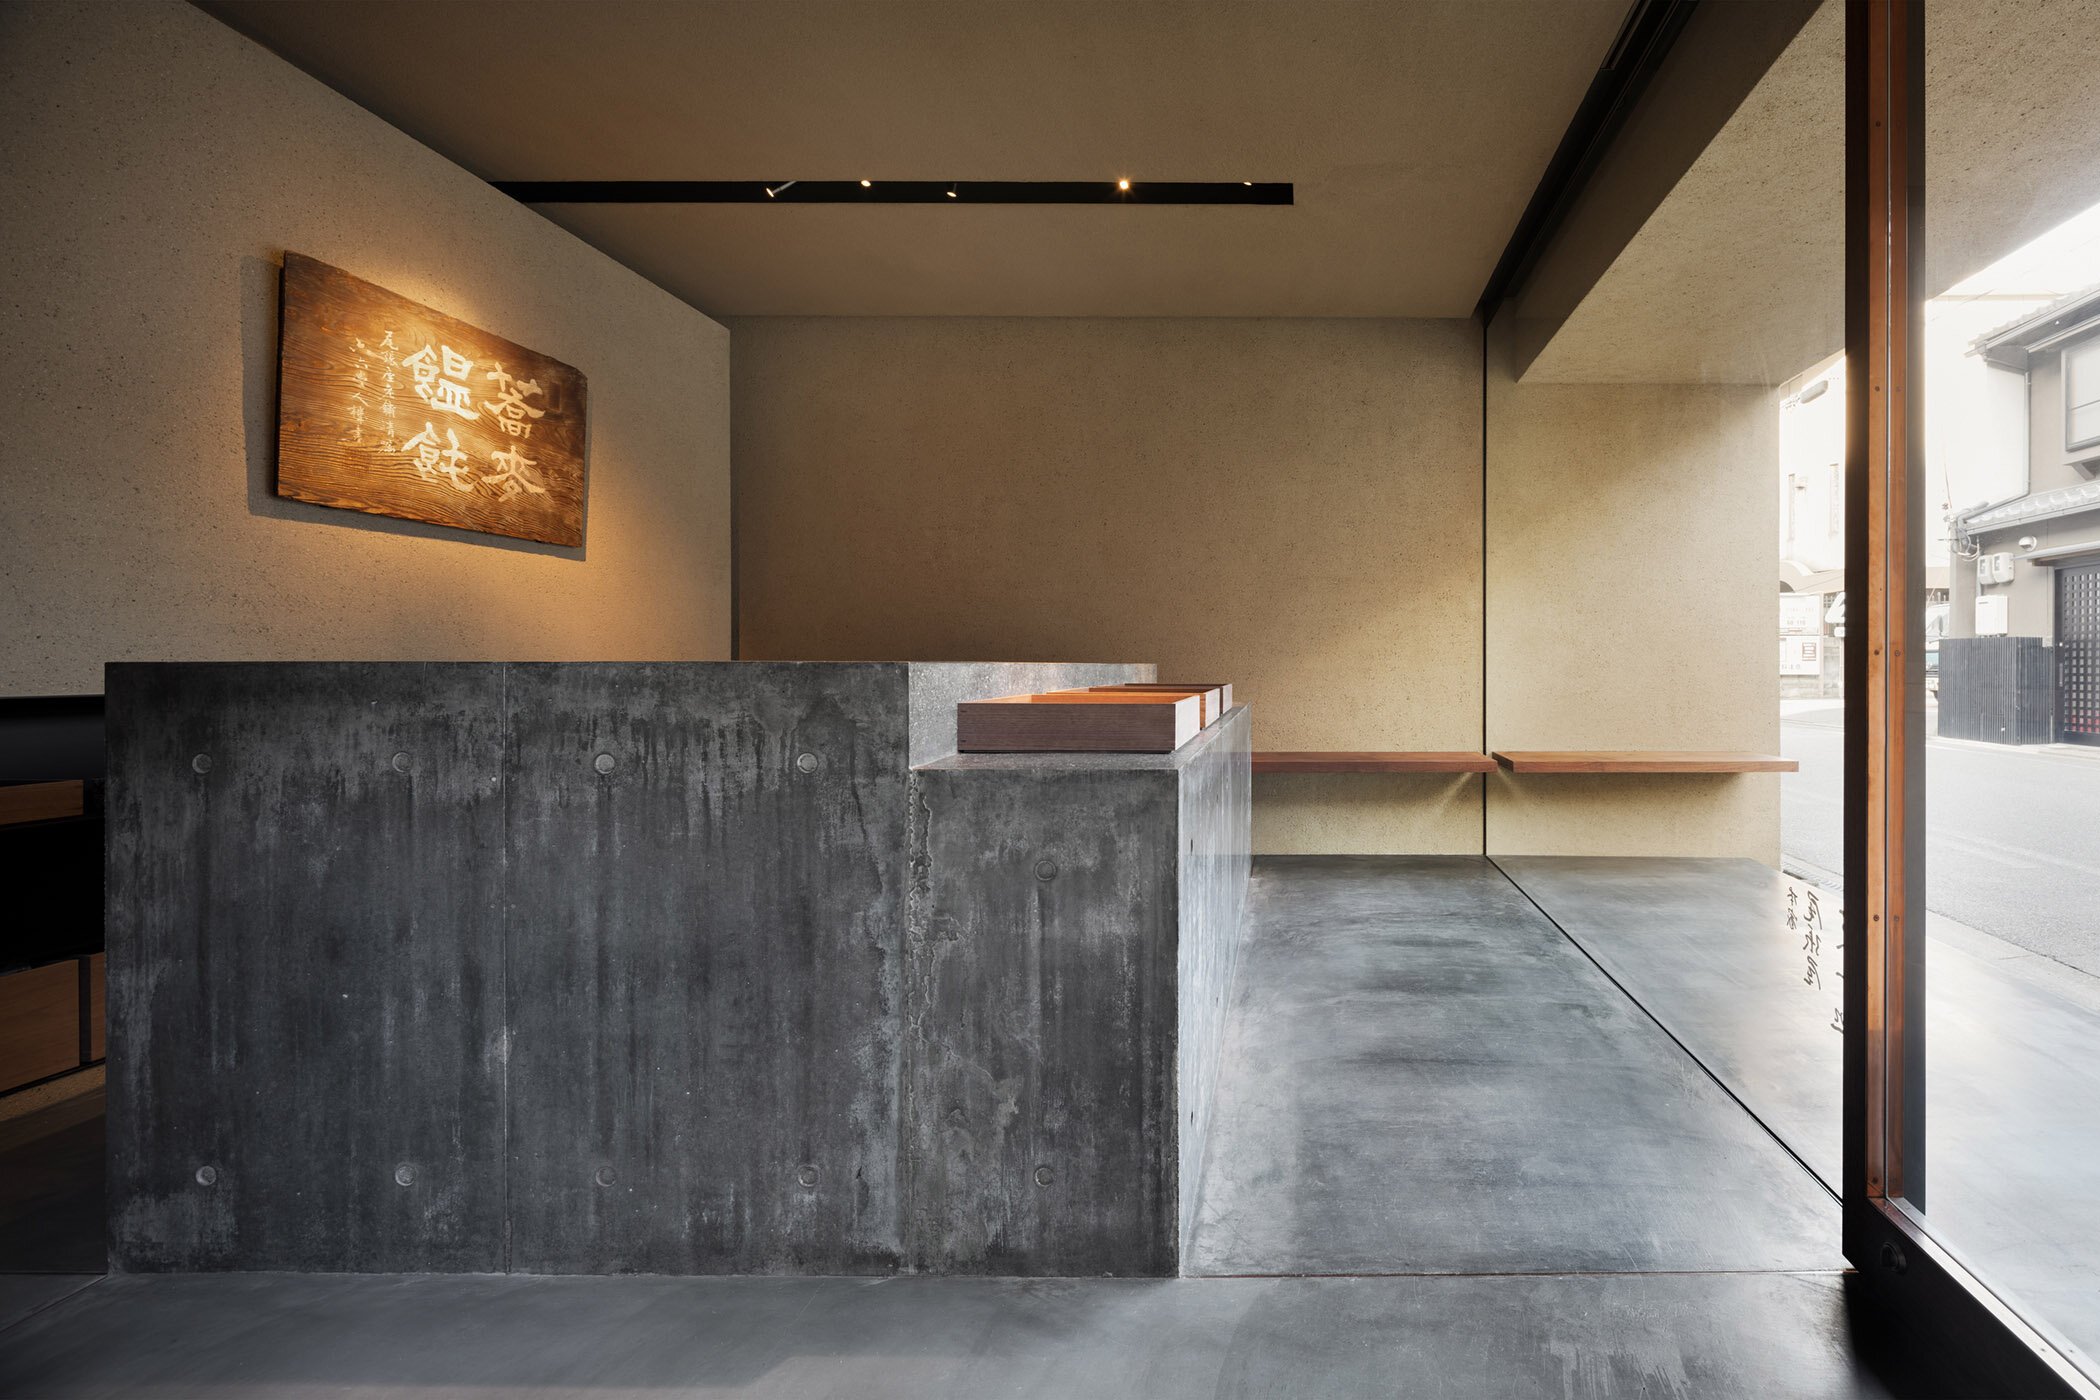  柳原照弘 Teruhiro Yanagihara Studioがインテリアデザインを手掛けた京都の尾張屋本店 菓子処のカウンターは研ぎ出しで仕上げた 